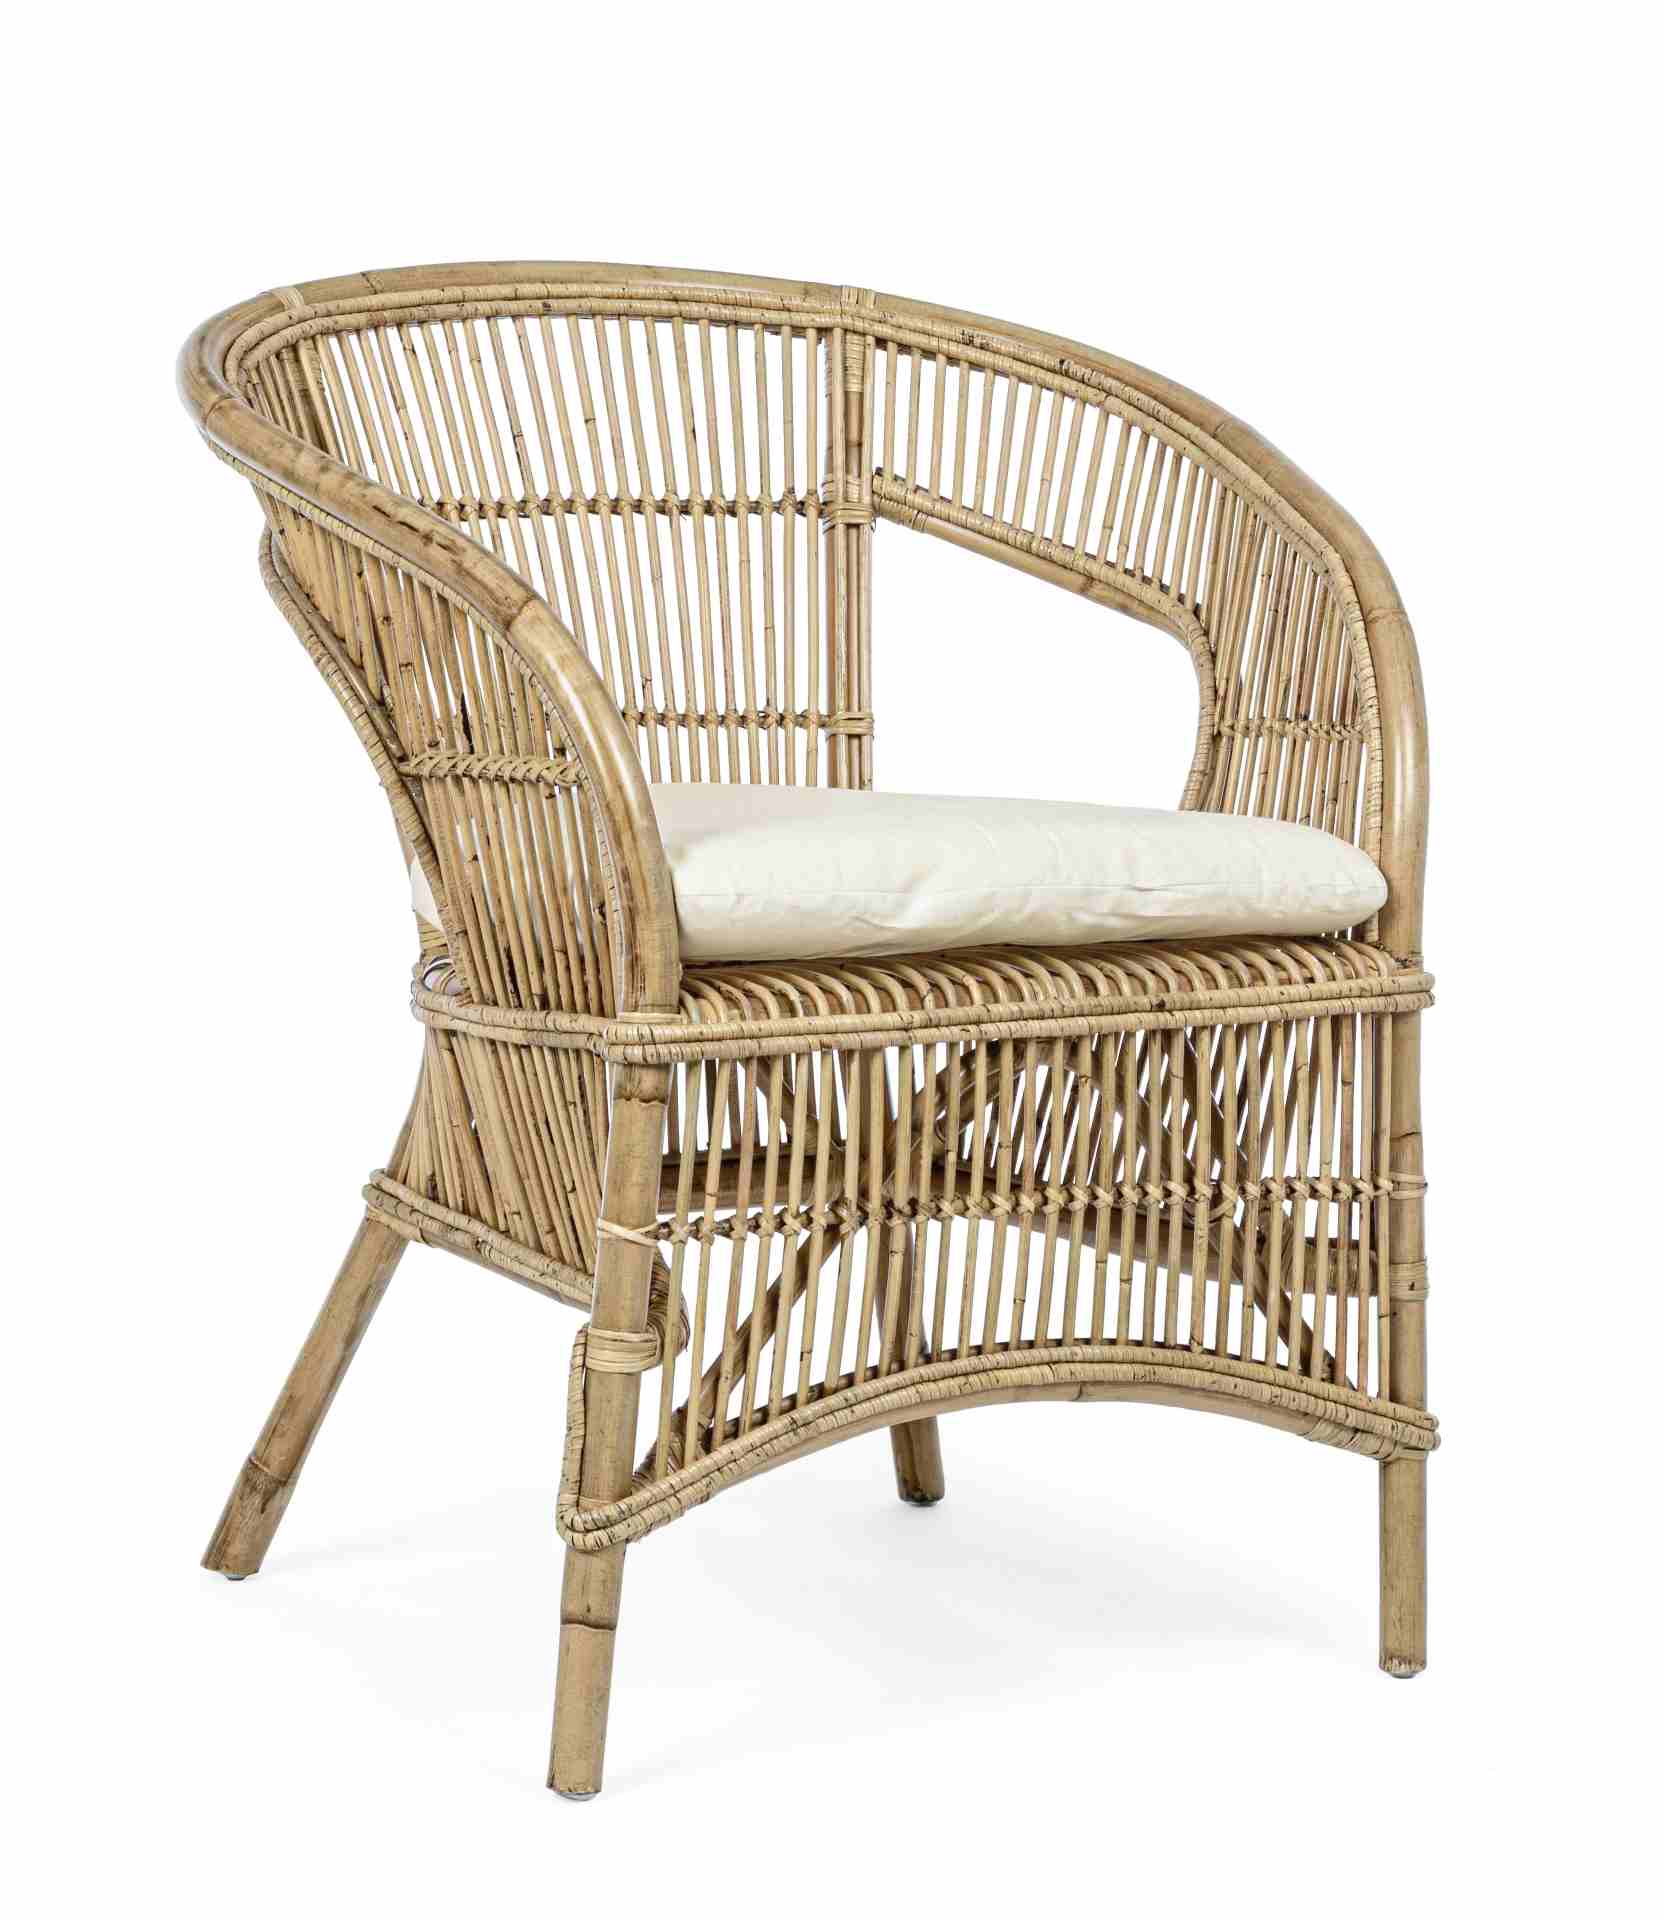 Der Sessel Consuelo überzeugt mit seinem klassischen Design. Gefertigt wurde er aus Rattan, welches einen natürlichen Farbton besitzt. Das Gestell ist auch aus Rattan. Der Sessel besitzt eine Sitzhöhe von 43 cm. Die Breite beträgt 68 cm.